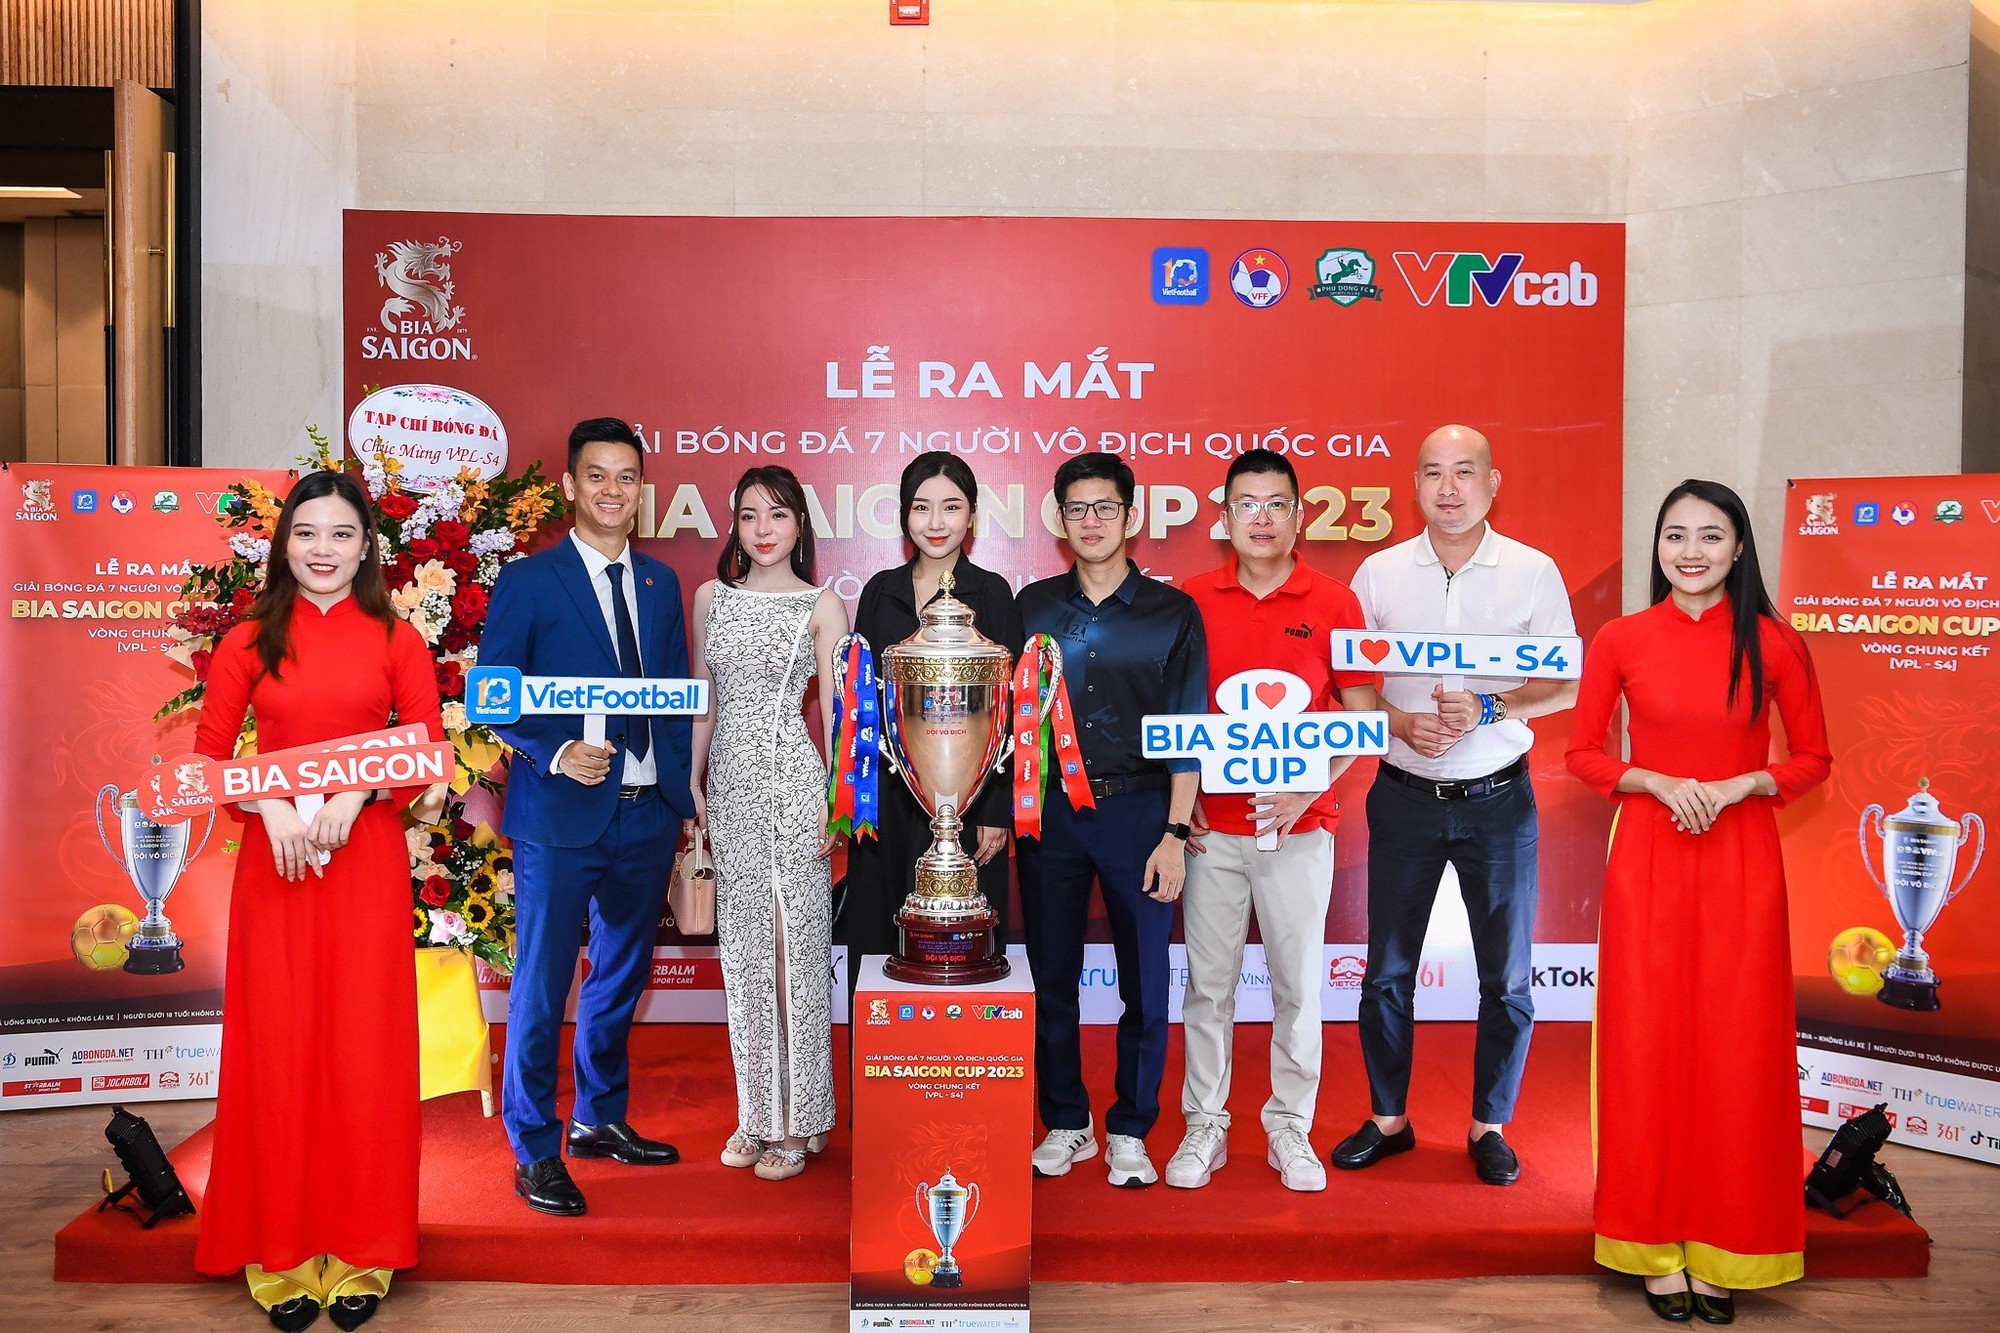 &quot;Bát hùng&quot; tranh tài tại VCK Giải bóng đá 7 người vô địch quốc gia - Bia Saigon Cup 2023  - Ảnh 1.